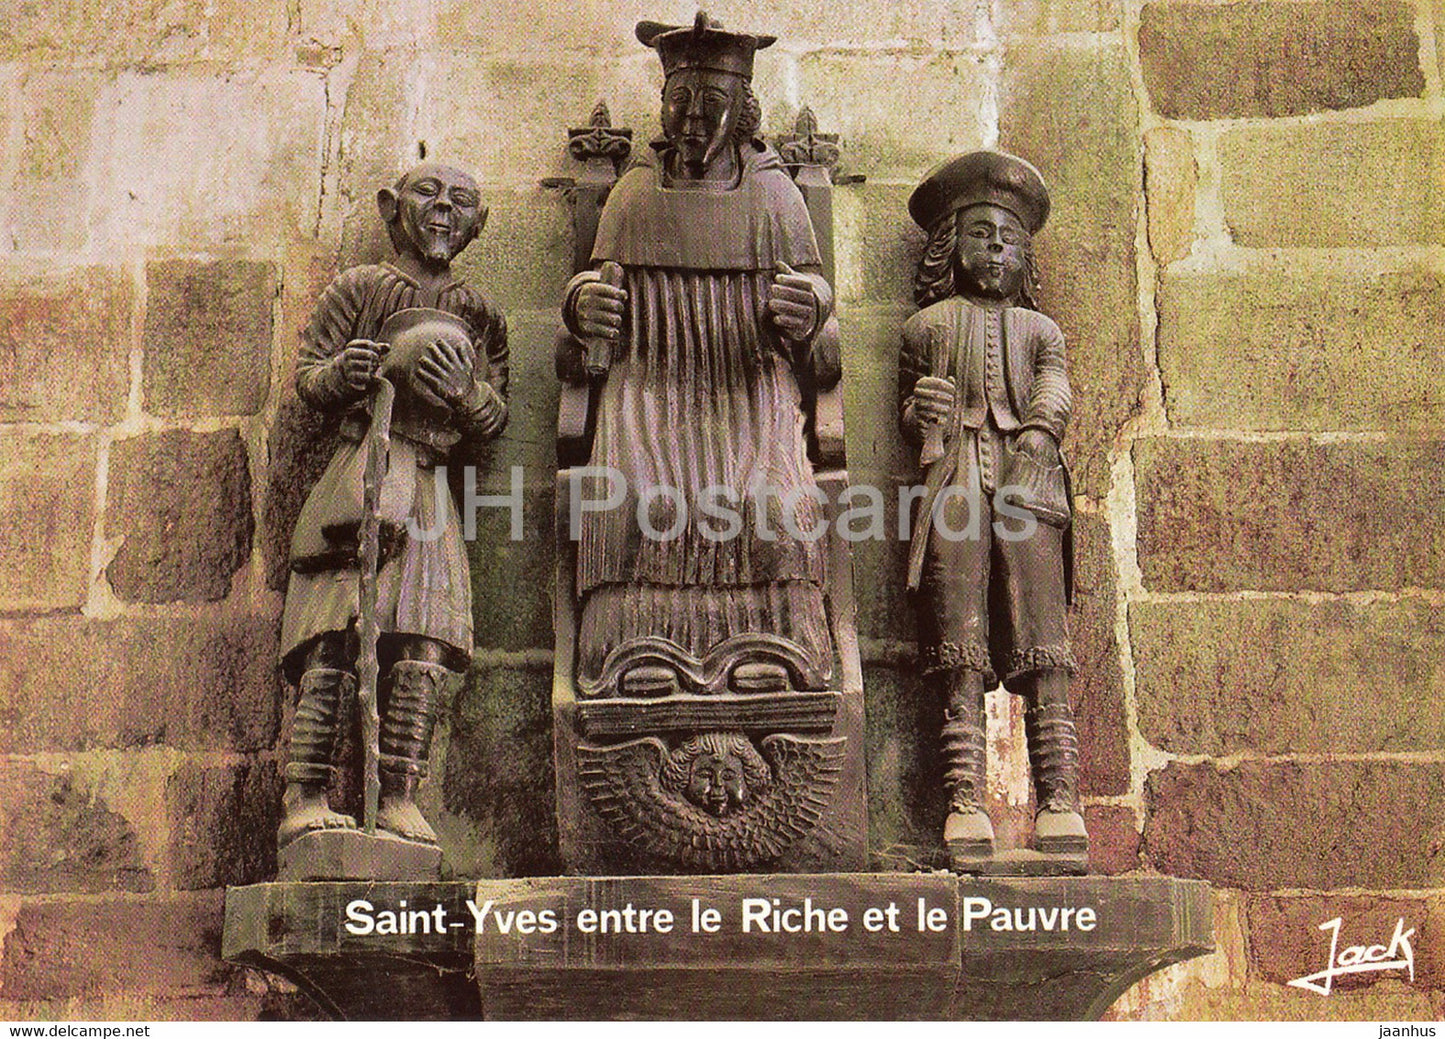 Treguier - La Statue de St Yves entre le Riche et le Pauvre - 22220 - France - unused - JH Postcards